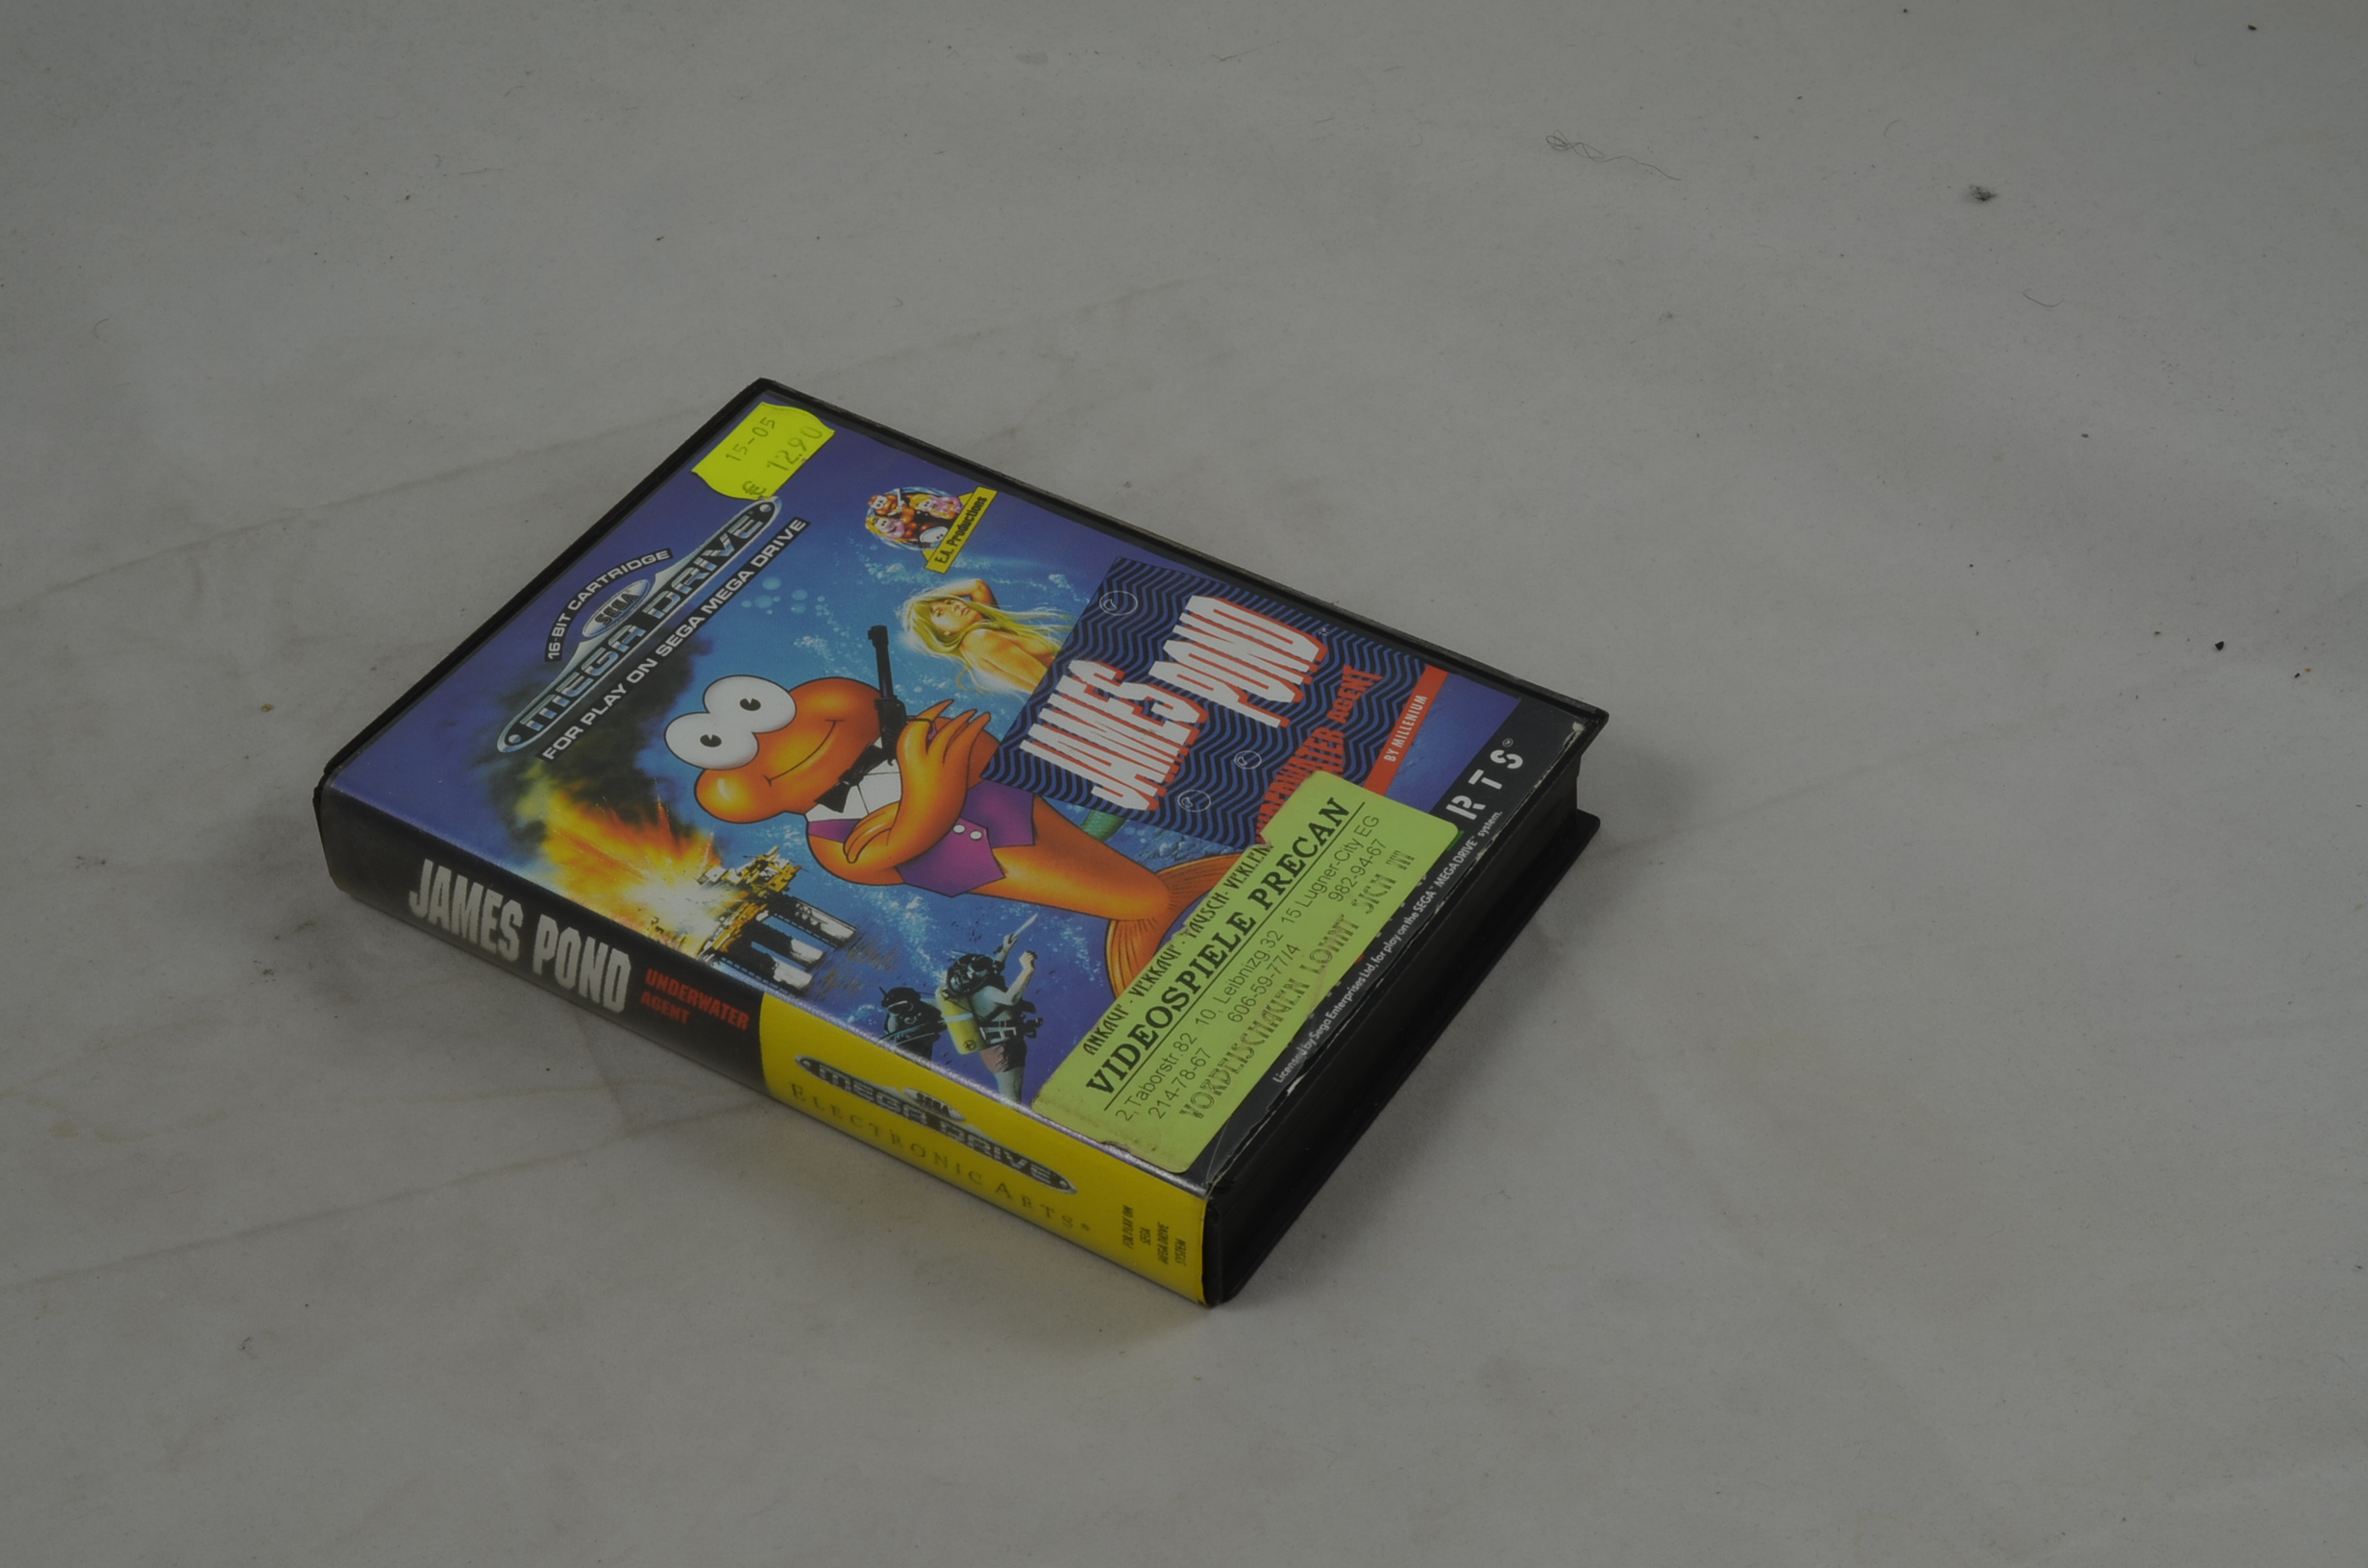 Produktbild von James Pond Underwater Agent Sega Mega Drive Spiel CIB (gut)